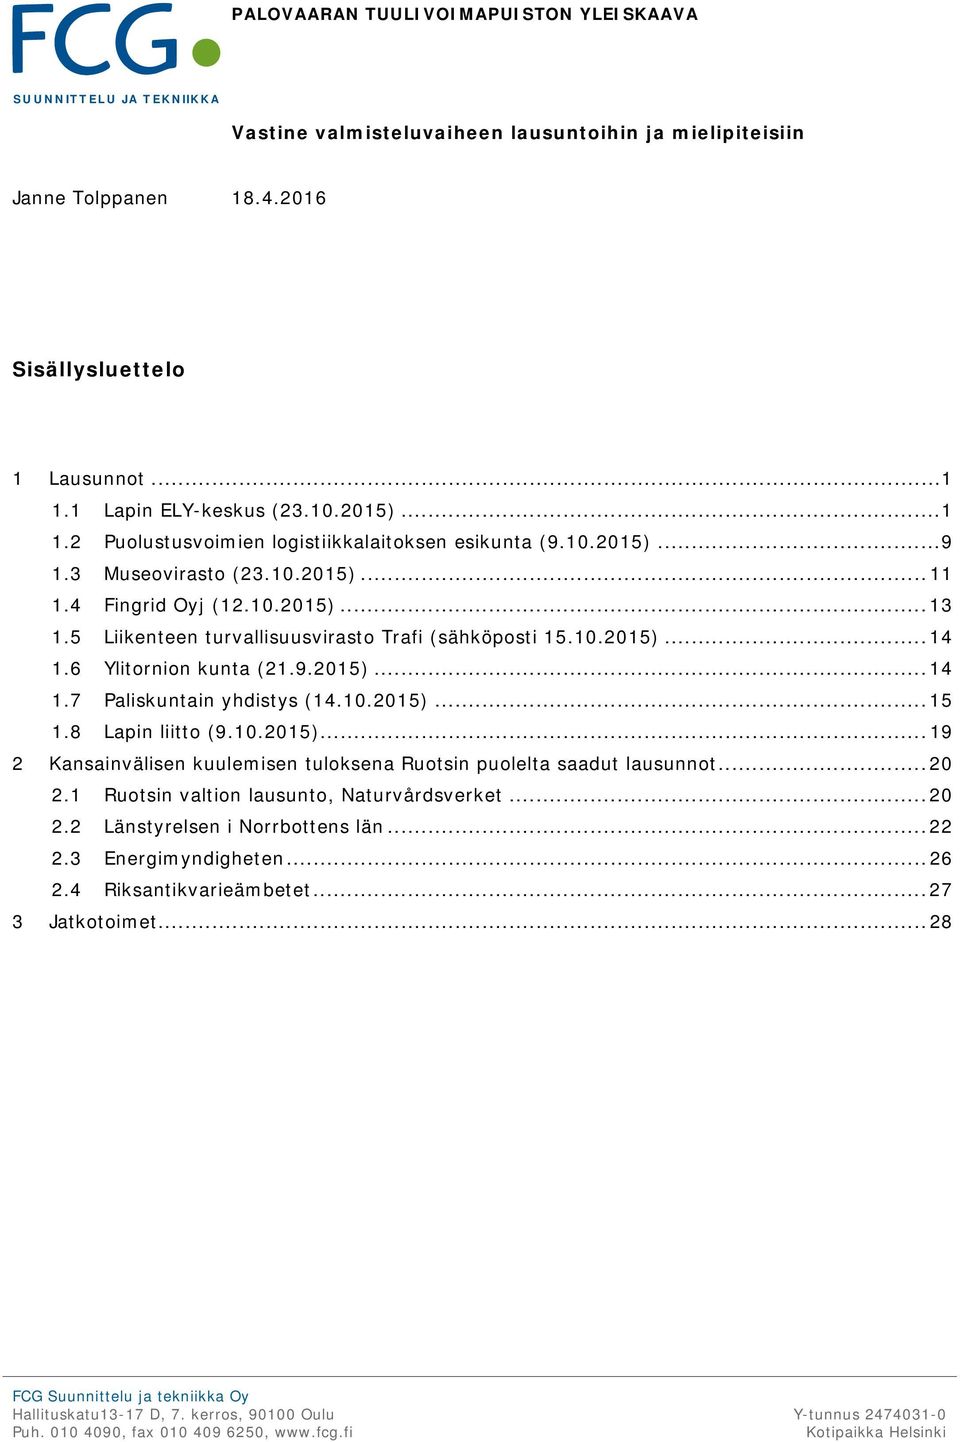 5 Liikenteen turvallisuusvirasto Trafi (sähköposti 15.10.2015)... 14 1.6 Ylitornion kunta (21.9.2015)... 14 1.7 Paliskuntain yhdistys (14.10.2015)... 15 1.8 Lapin liitto (9.10.2015)... 19 2 Kansainvälisen kuulemisen tuloksena Ruotsin puolelta saadut lausunnot.